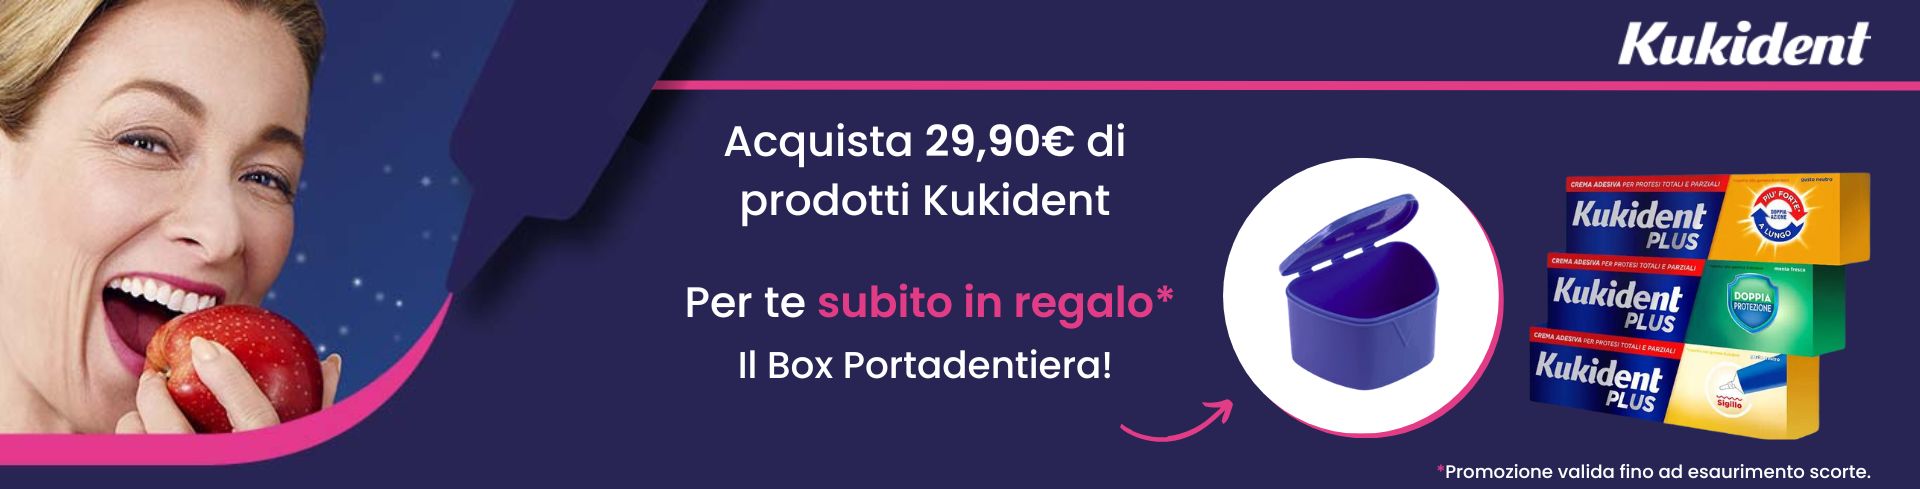 Kukident: acquista 29,90€ di prodotti e ricevi in regalo il Box Portadentiera!